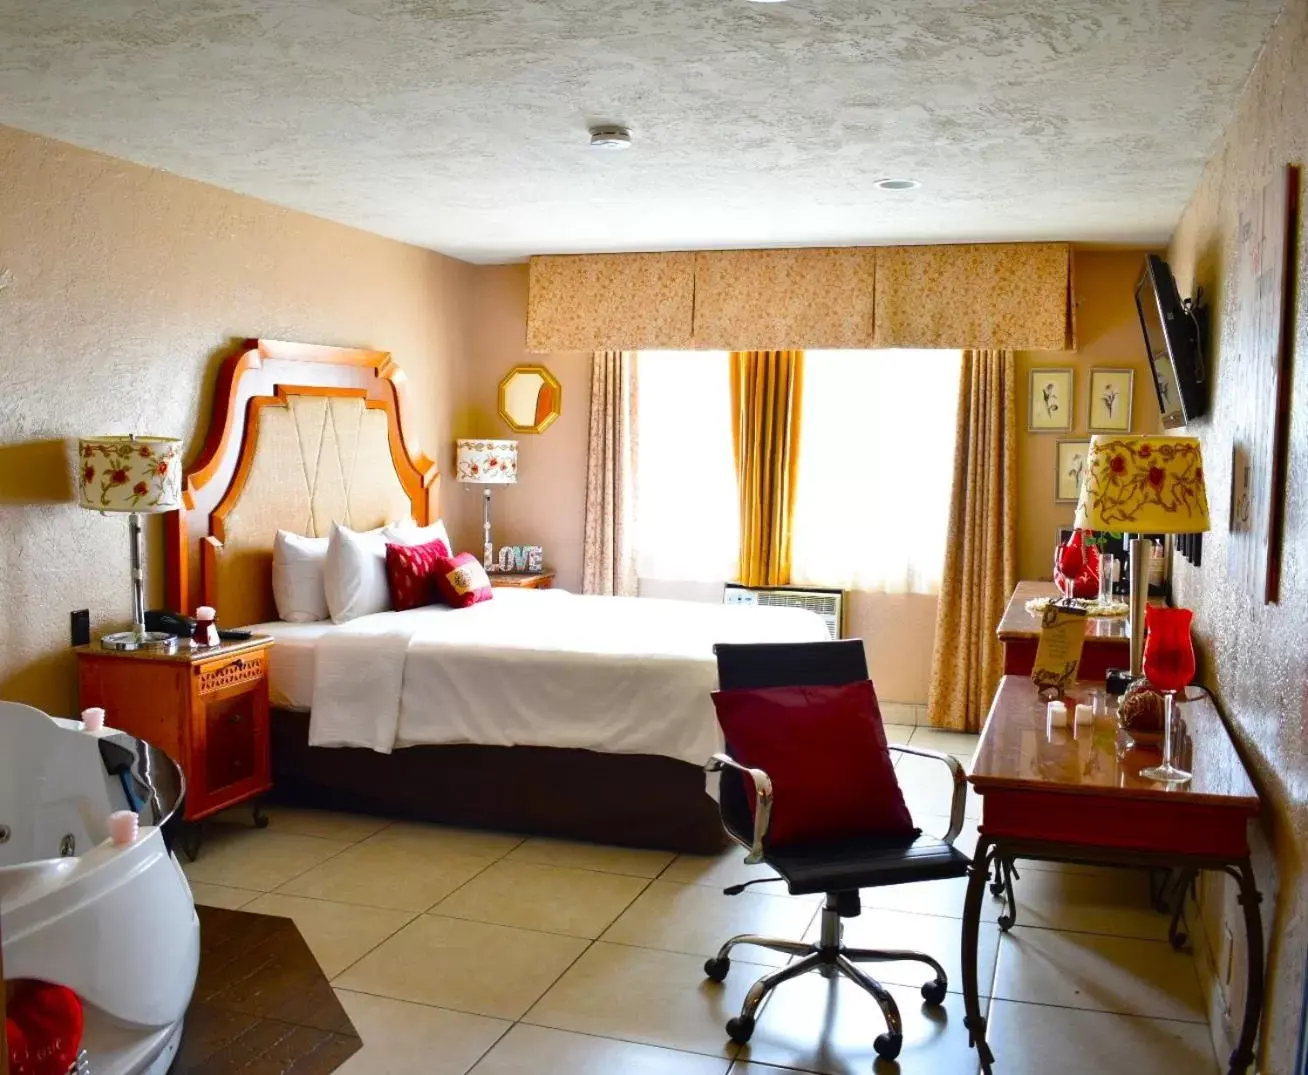 Bedroom in Hotel Baja San Diego